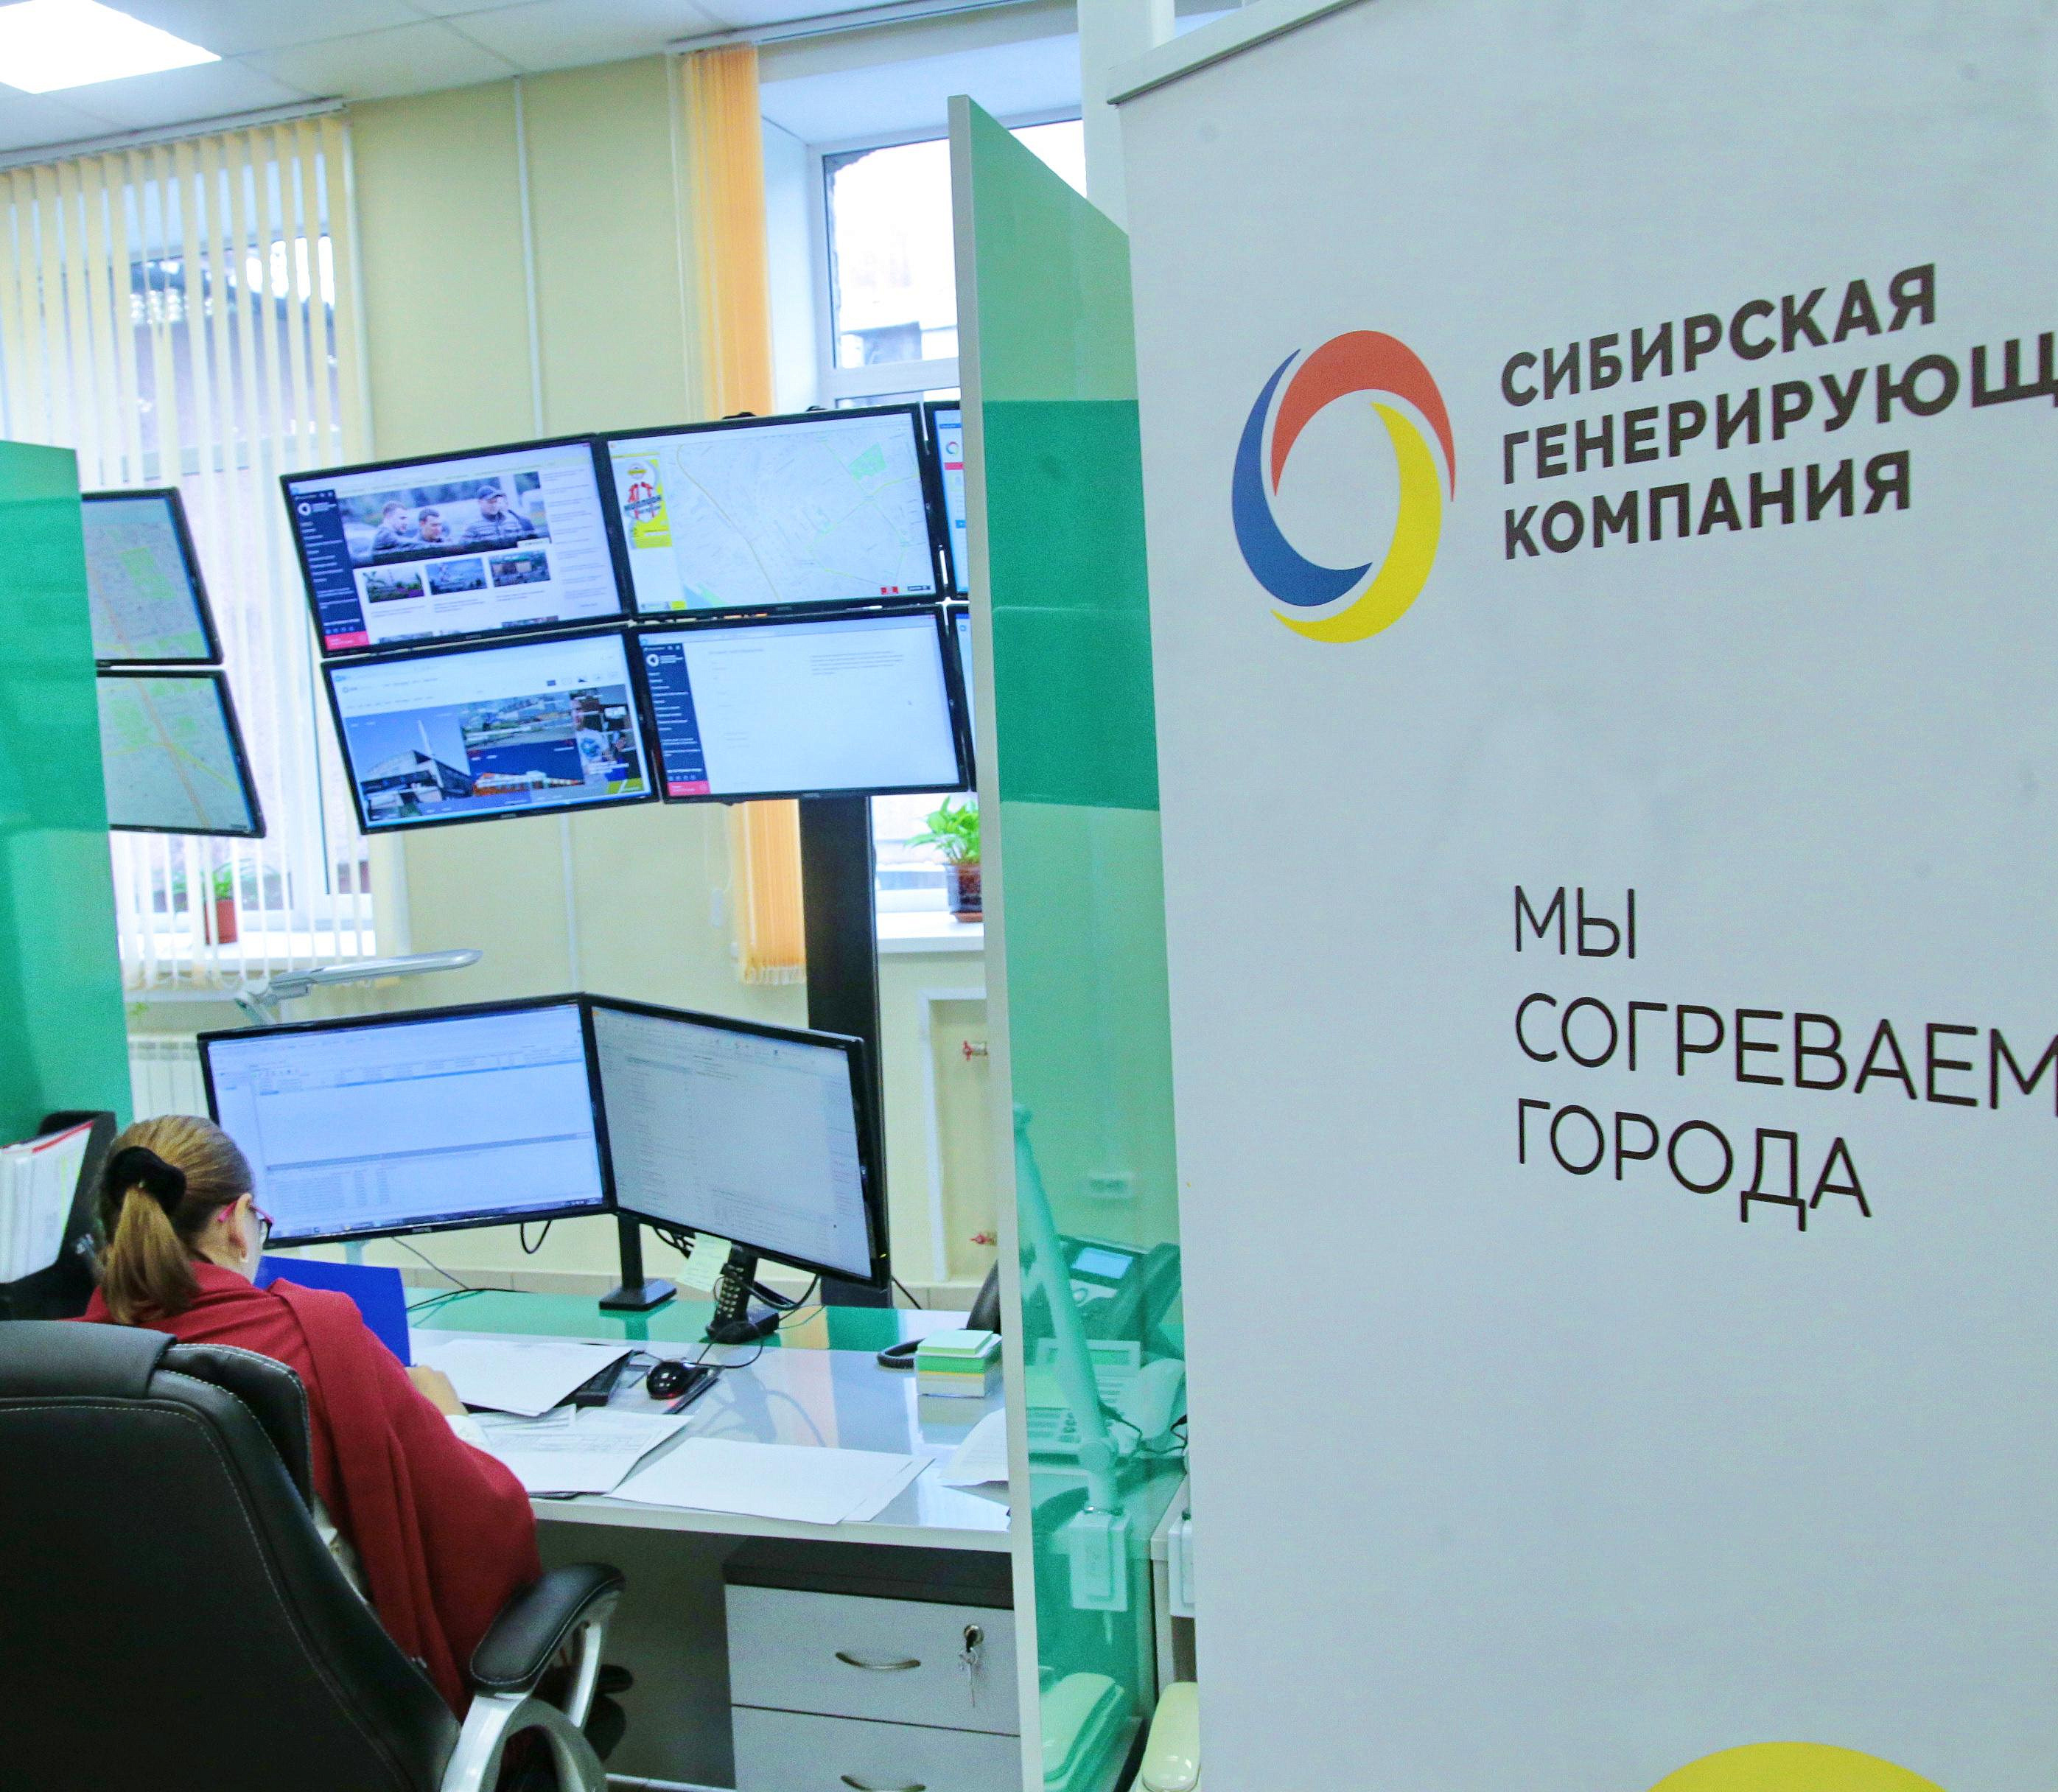 СГК вернёт новосибирцам почти 600 млн рублей в счёт будущих платежей